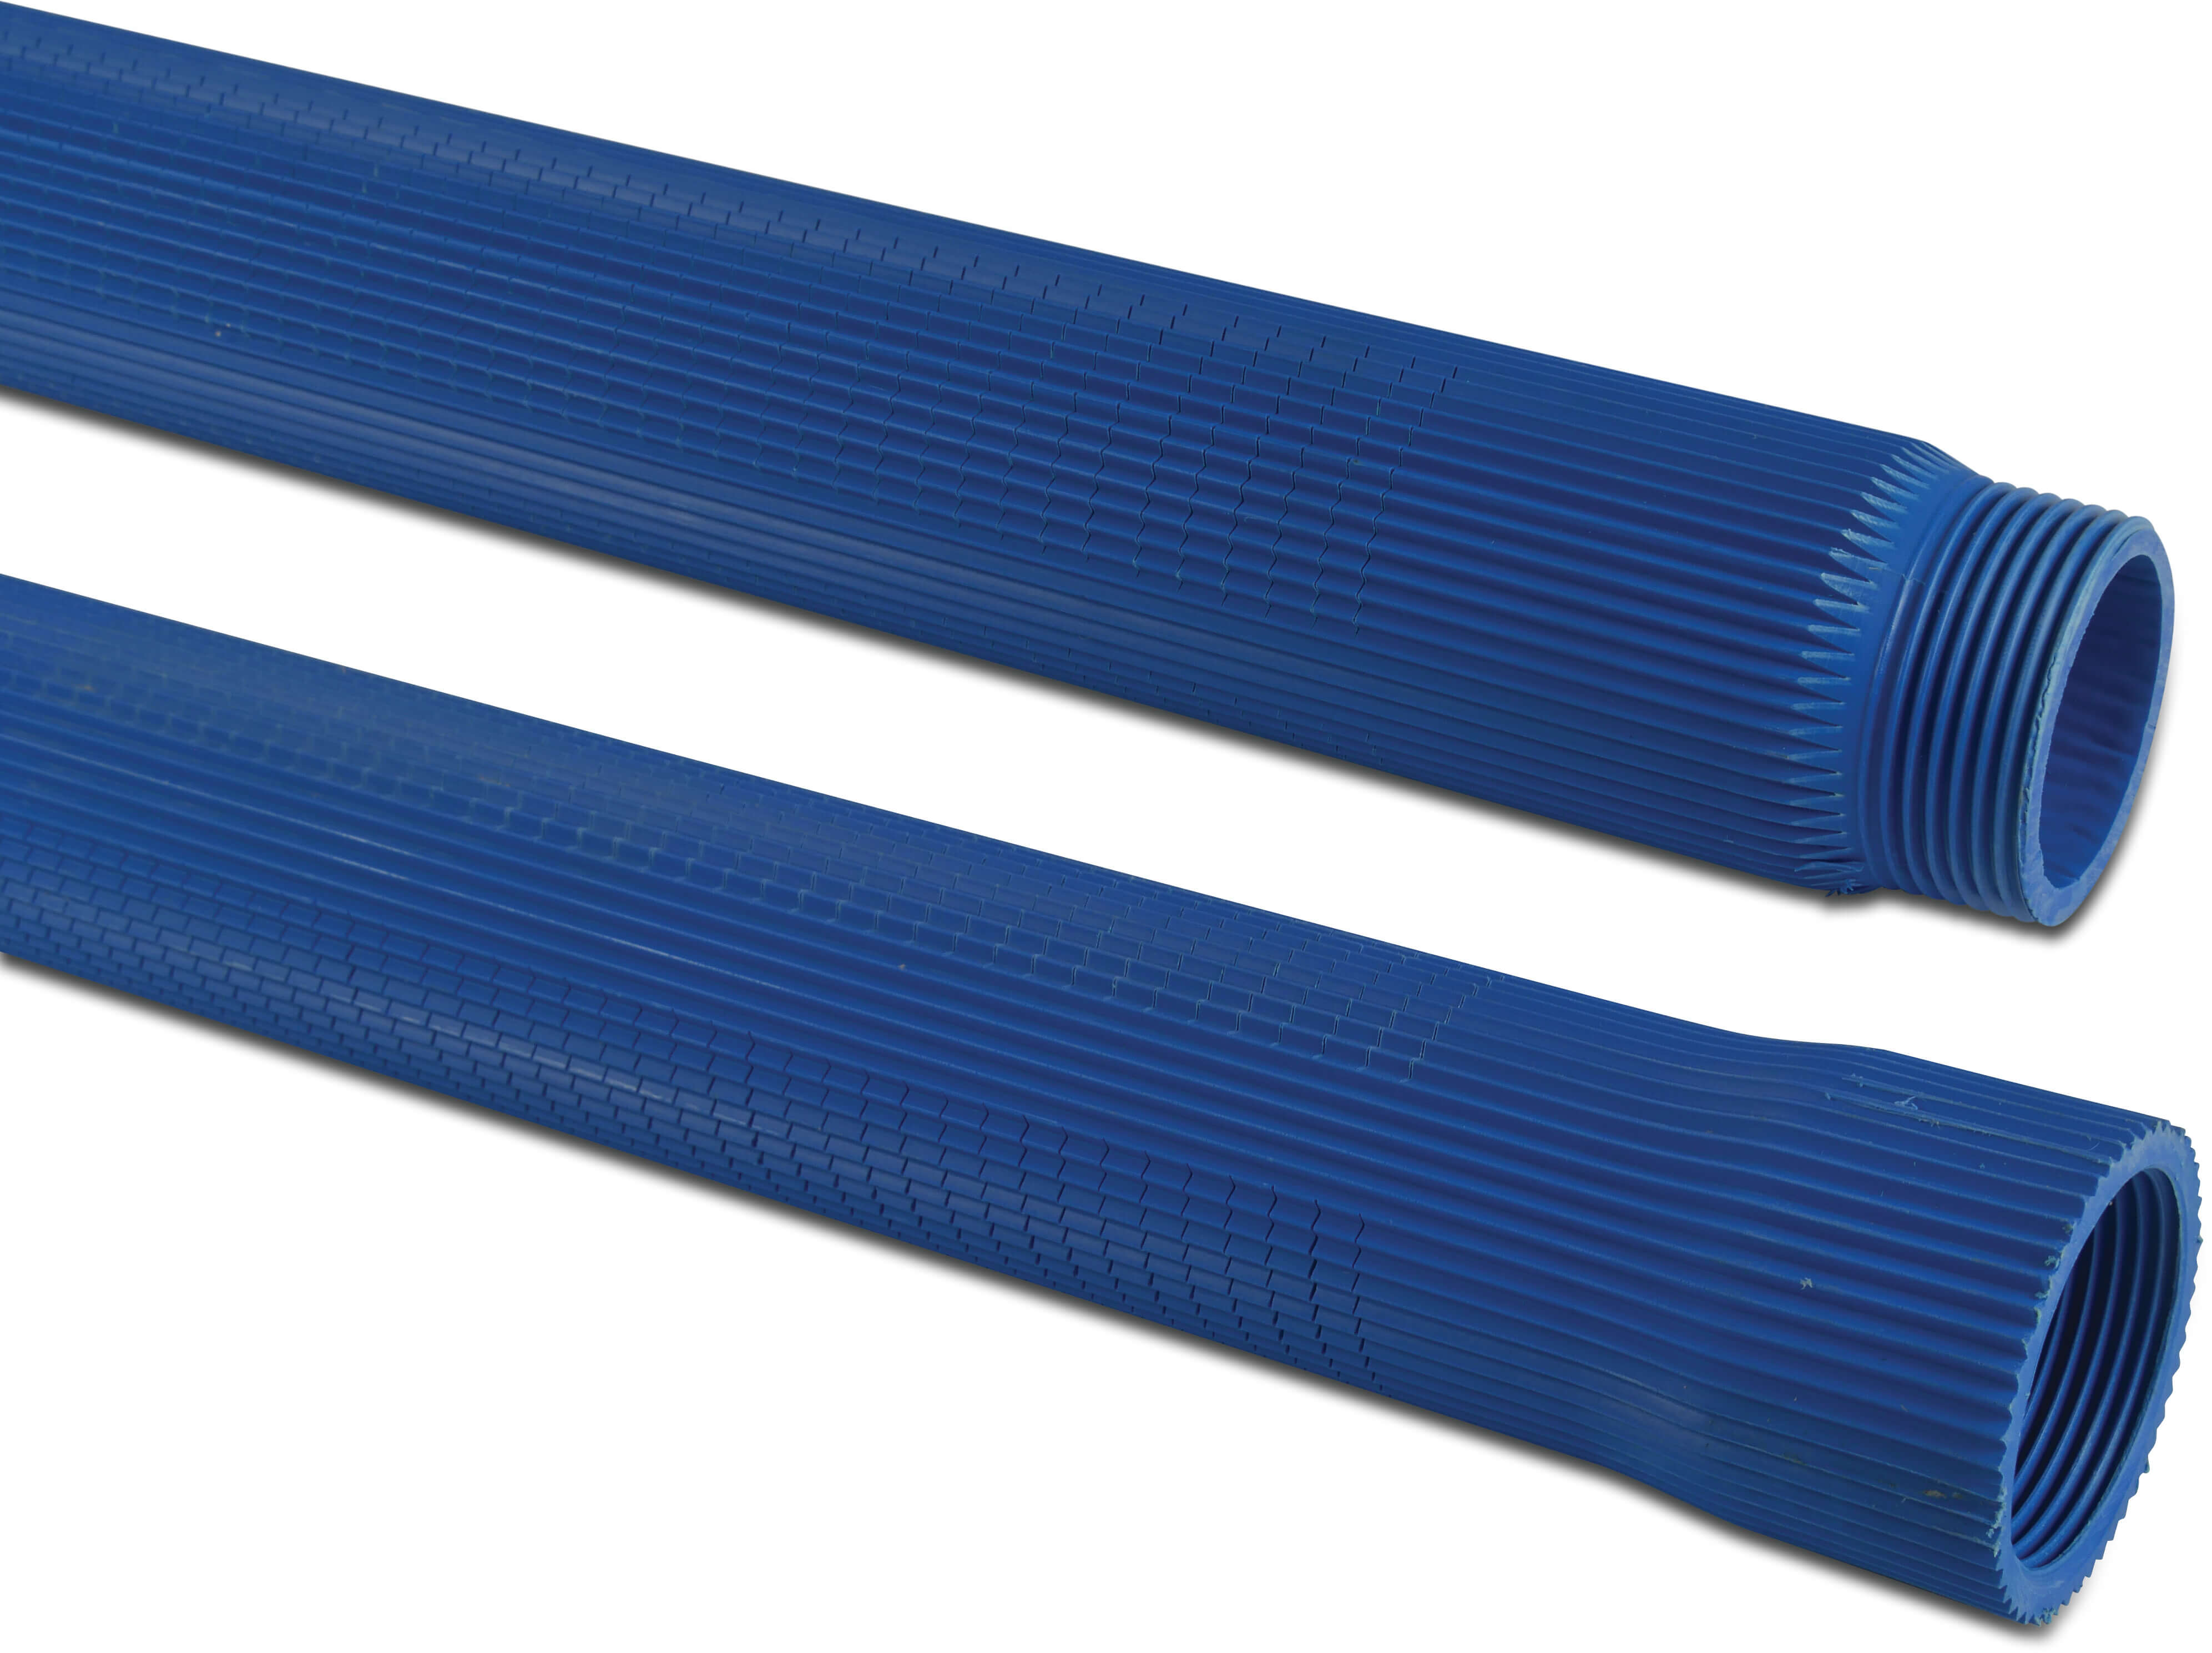 Rippenfilter PVC-U 1 1/4" Innengewinde x Außengewinde 0,3 mm Blau 1m type Rippenausführung